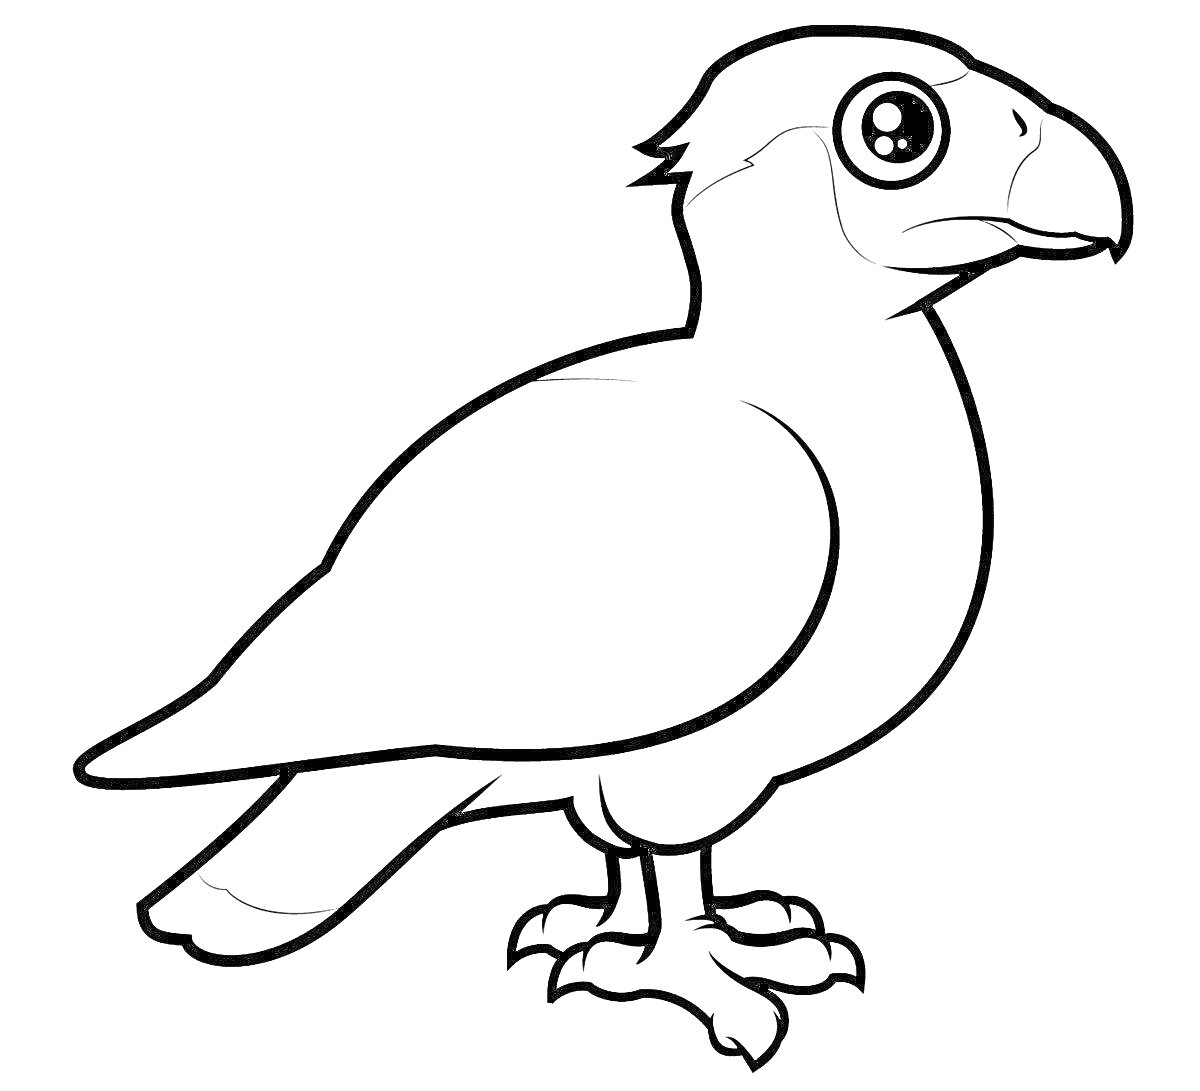 Птица с округлыми глазами, изогнутым клювом и мощными лапами